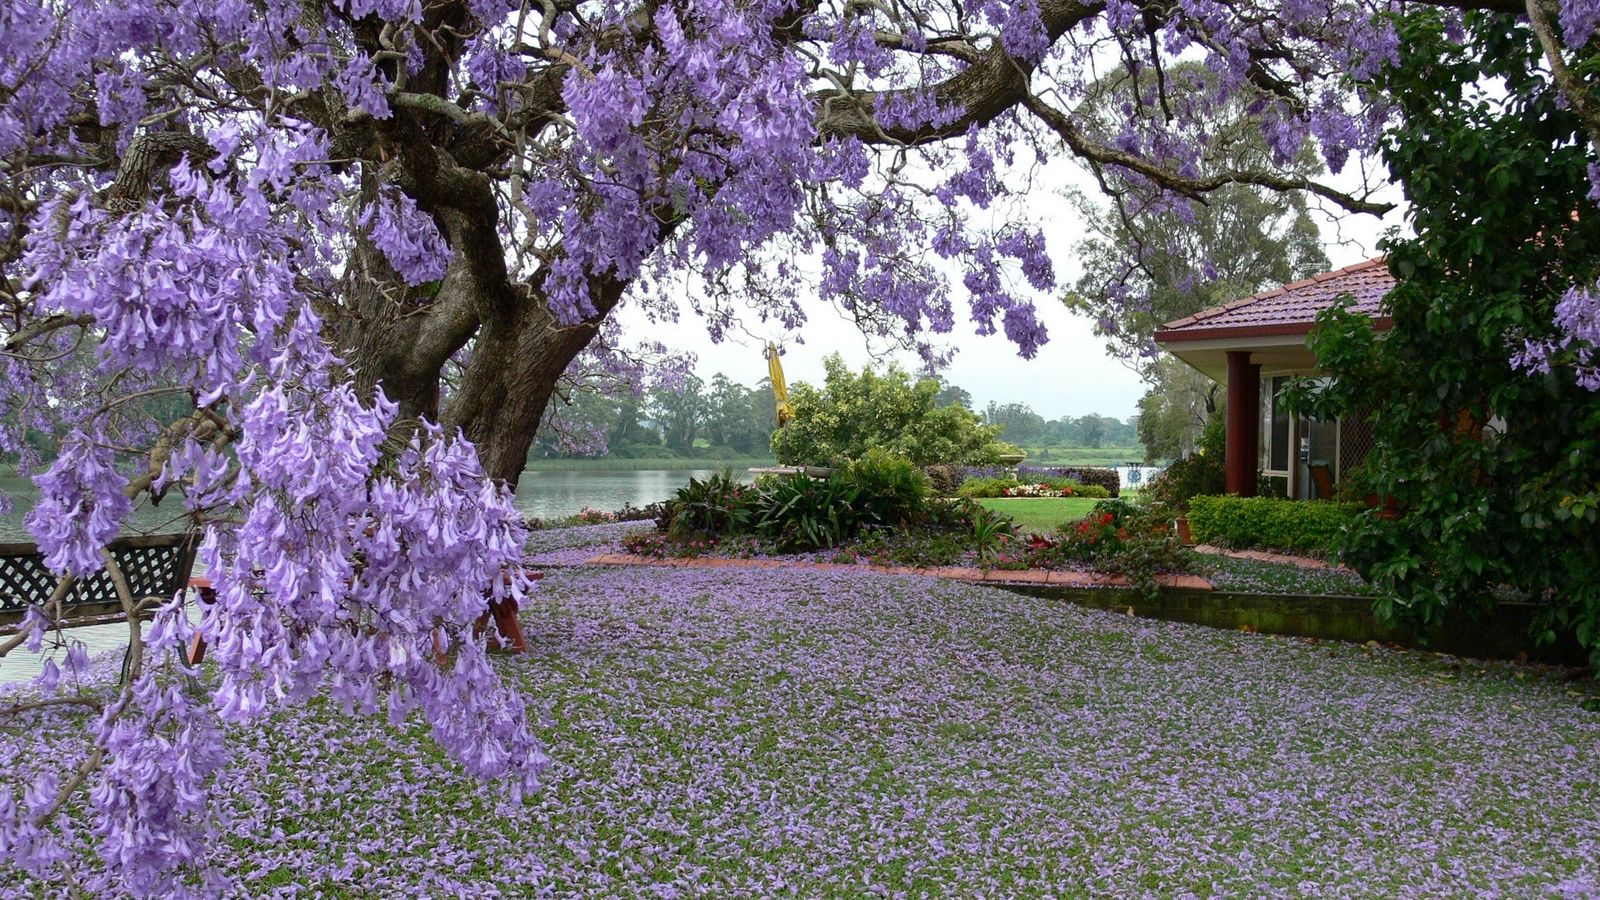 Download wallpaper 1600x900 spring, tree, blossoms, petals, yard